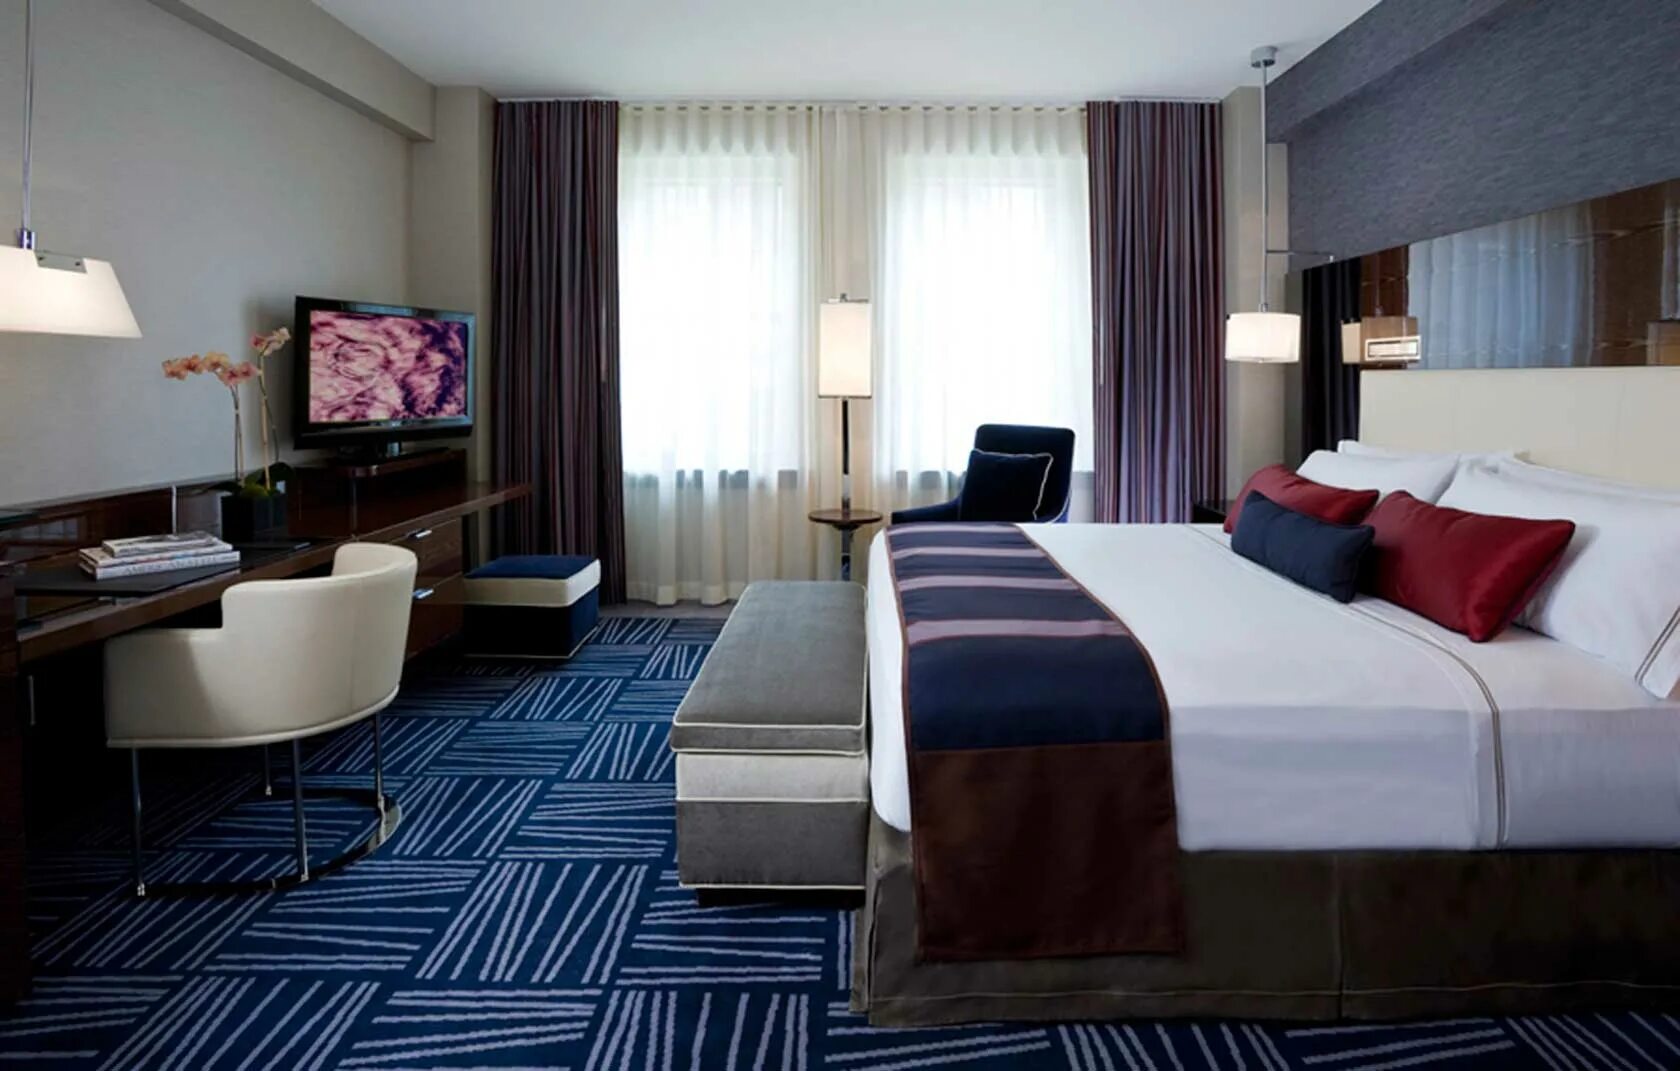 Интерьер номера в гостинице. Отель в современном стиле. Интерьеры гостиниц в современном стиле. Спальня в гостиничном стиле. Hotel bedroom